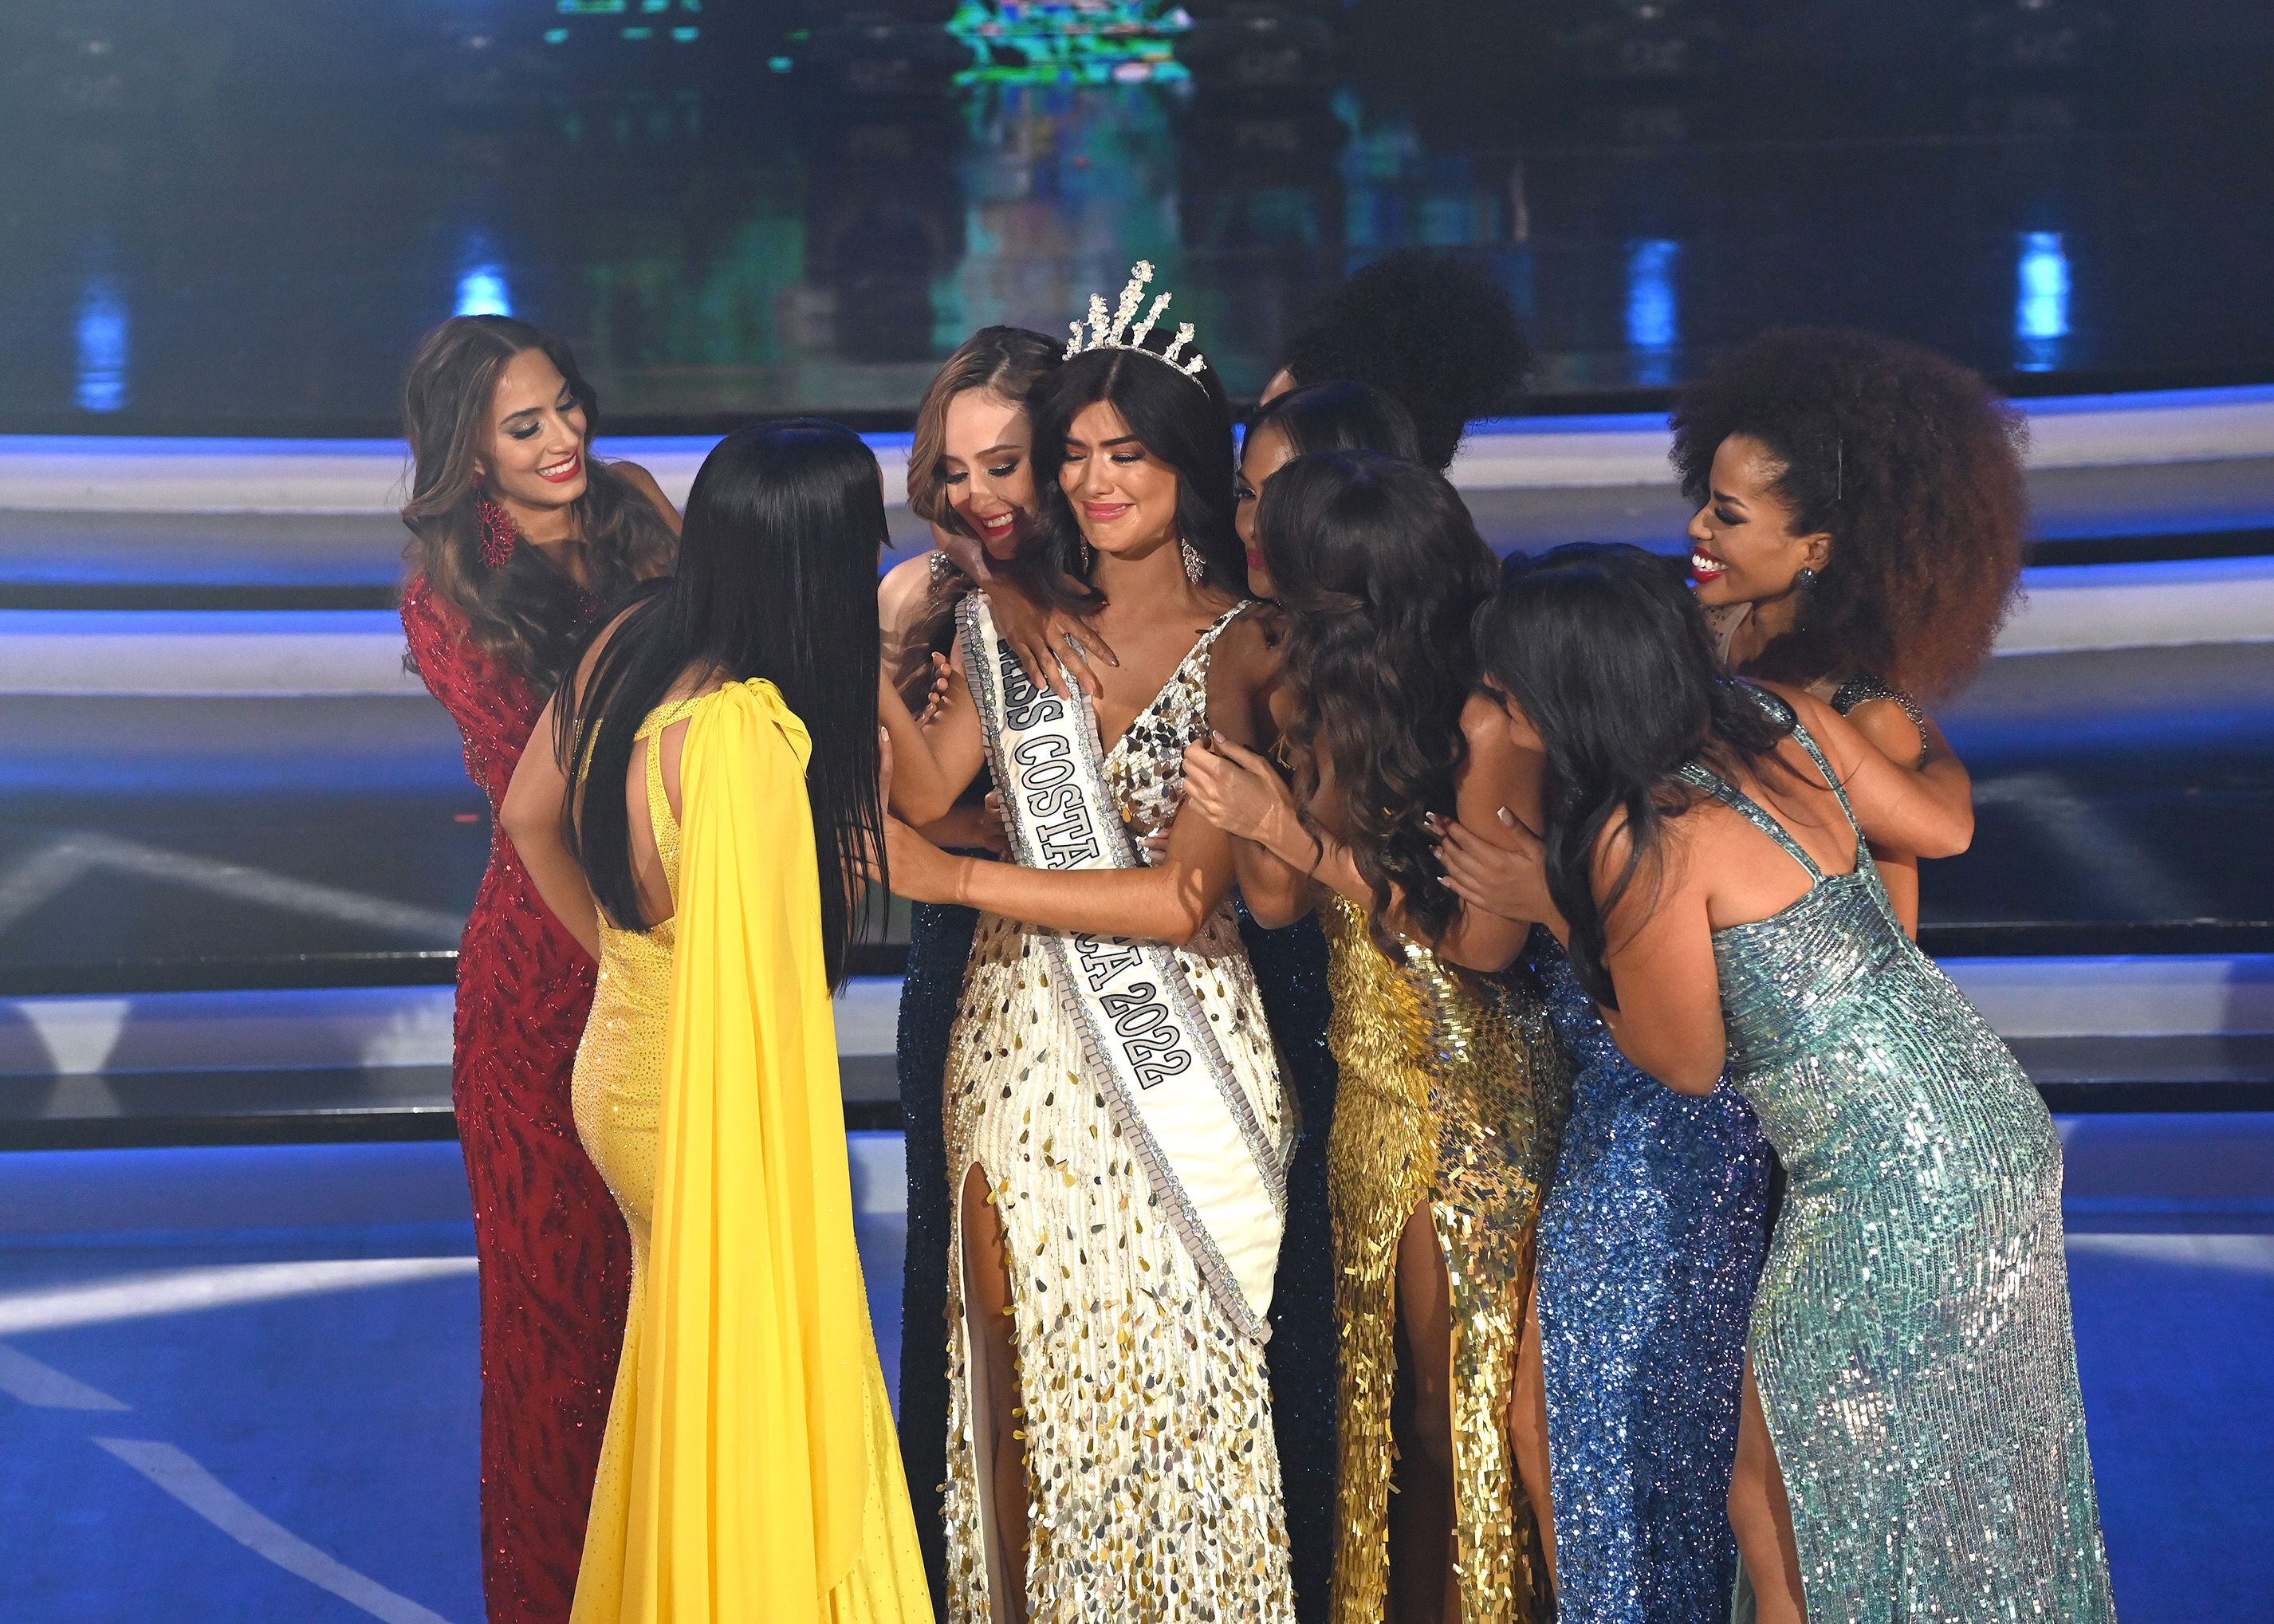 Miss Costa Rica: candidatas deberán ser mujeres ‘médica y legalmente’; casadas y madres podrán participar